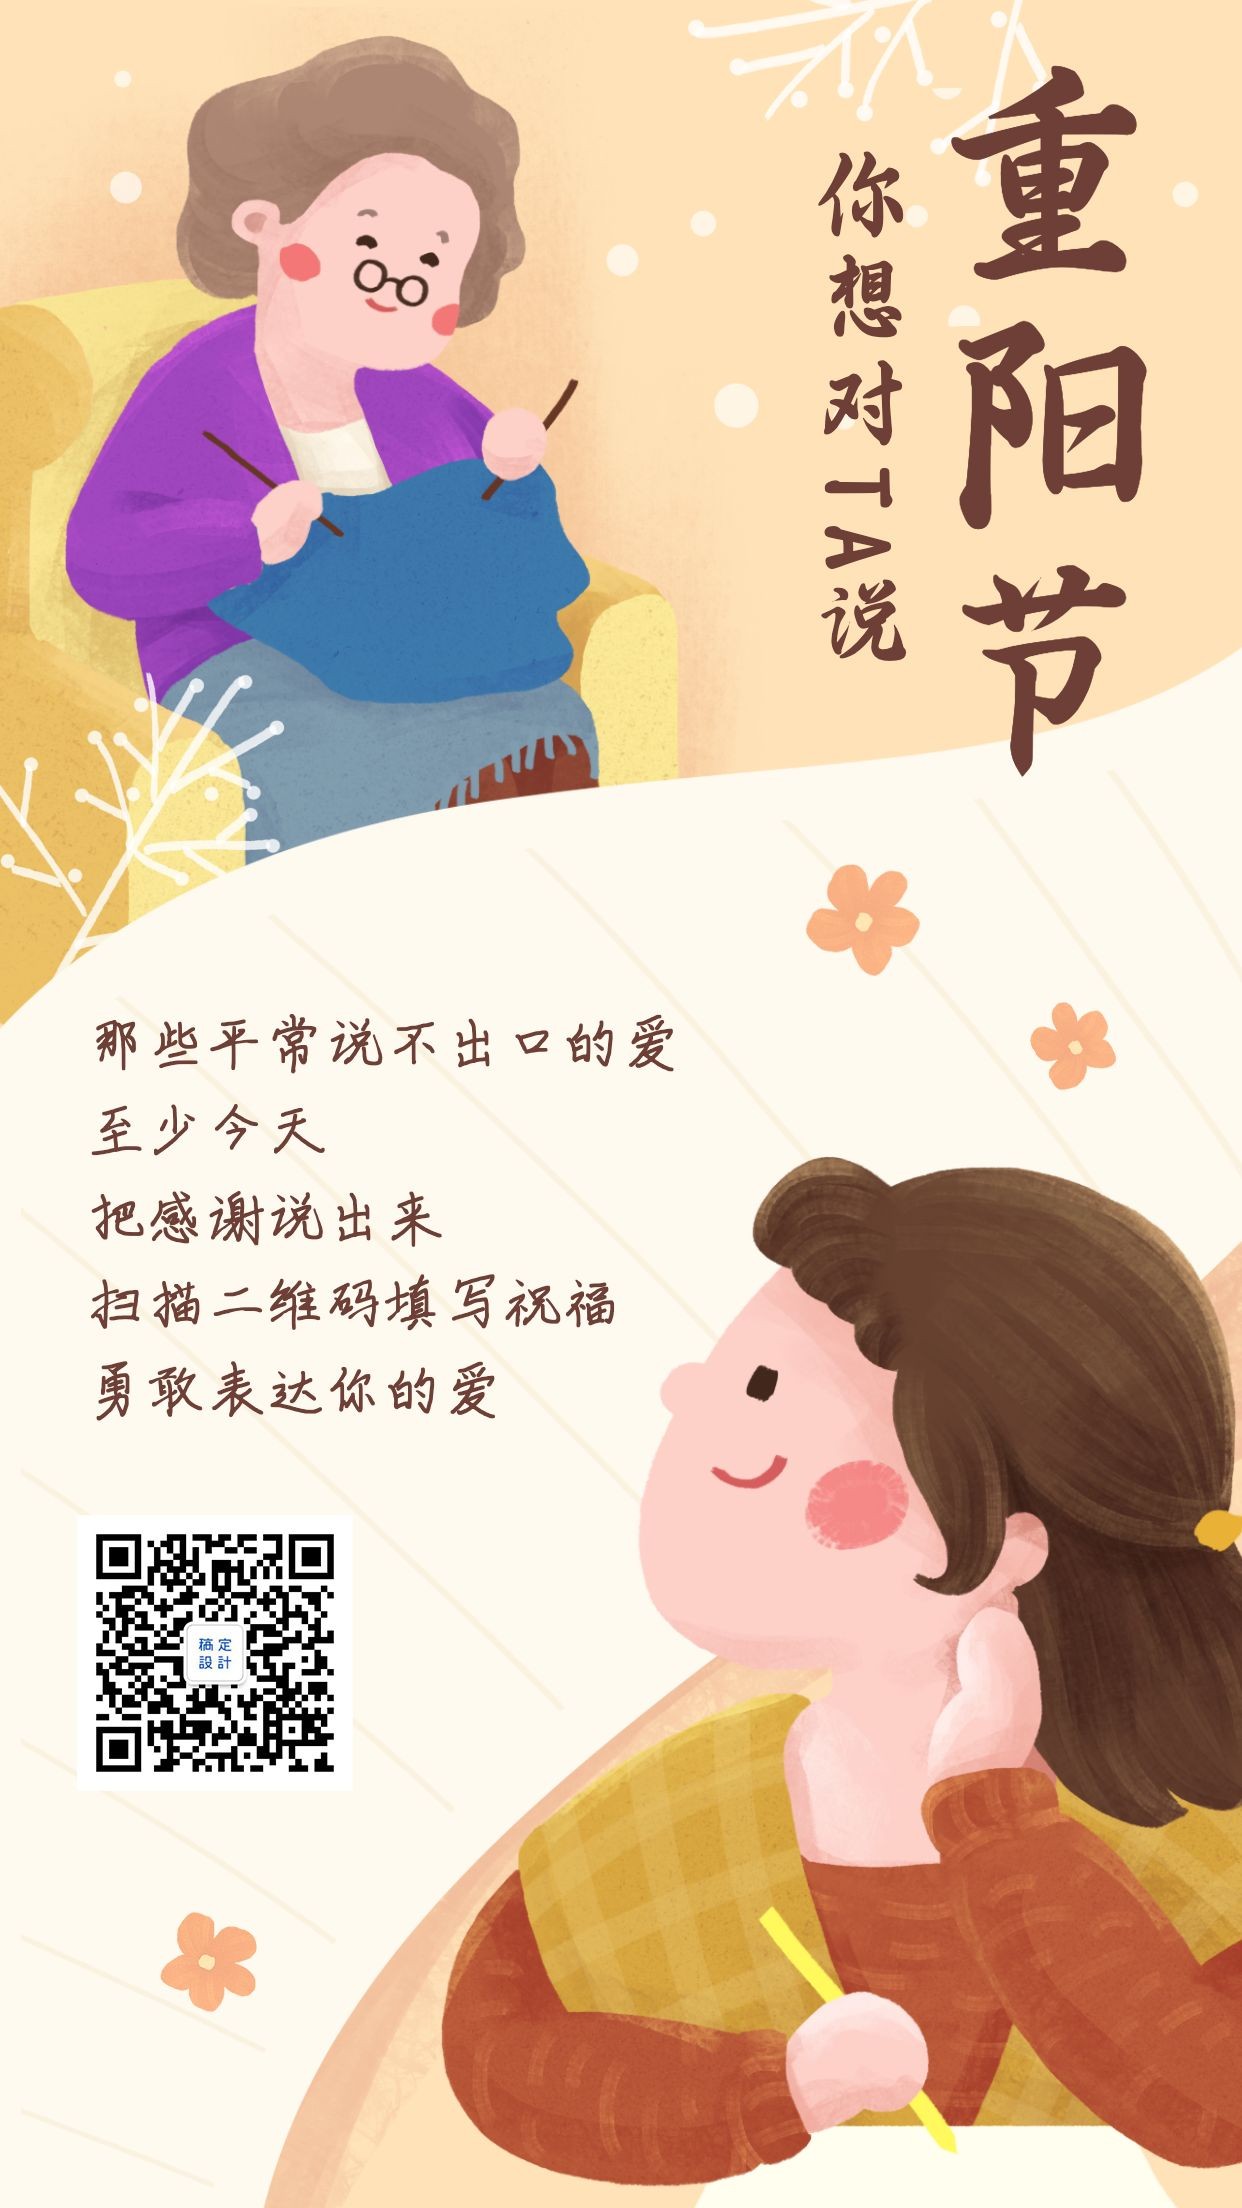 重阳节老人节祝福创意手绘插画温馨手机海报